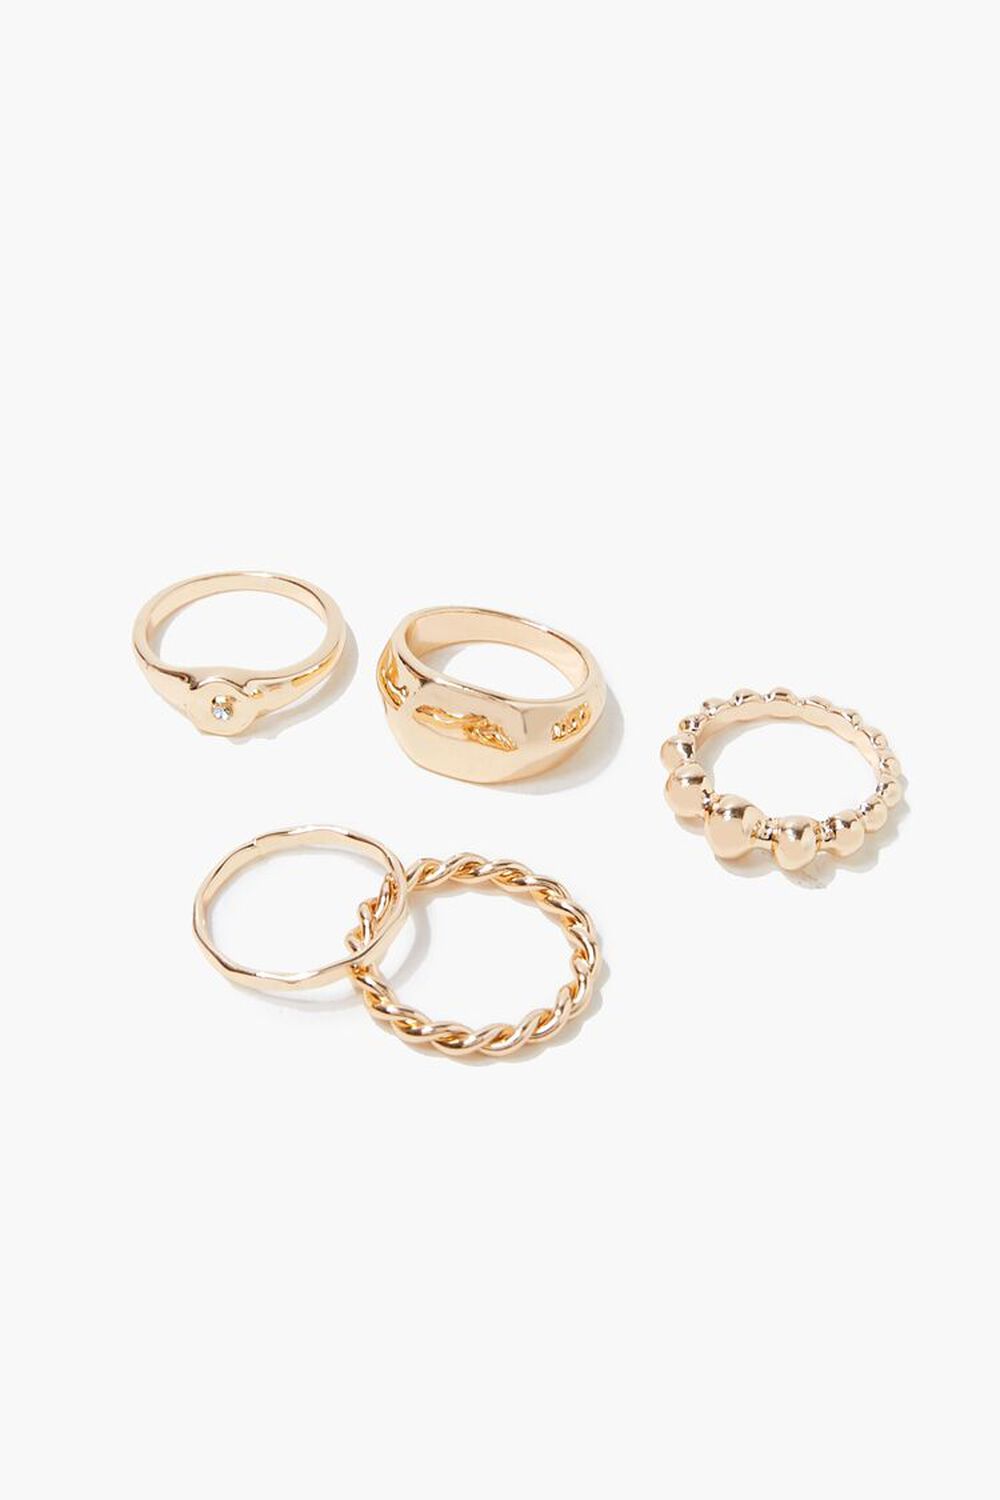 GOLD Variety Ring Set, image 1